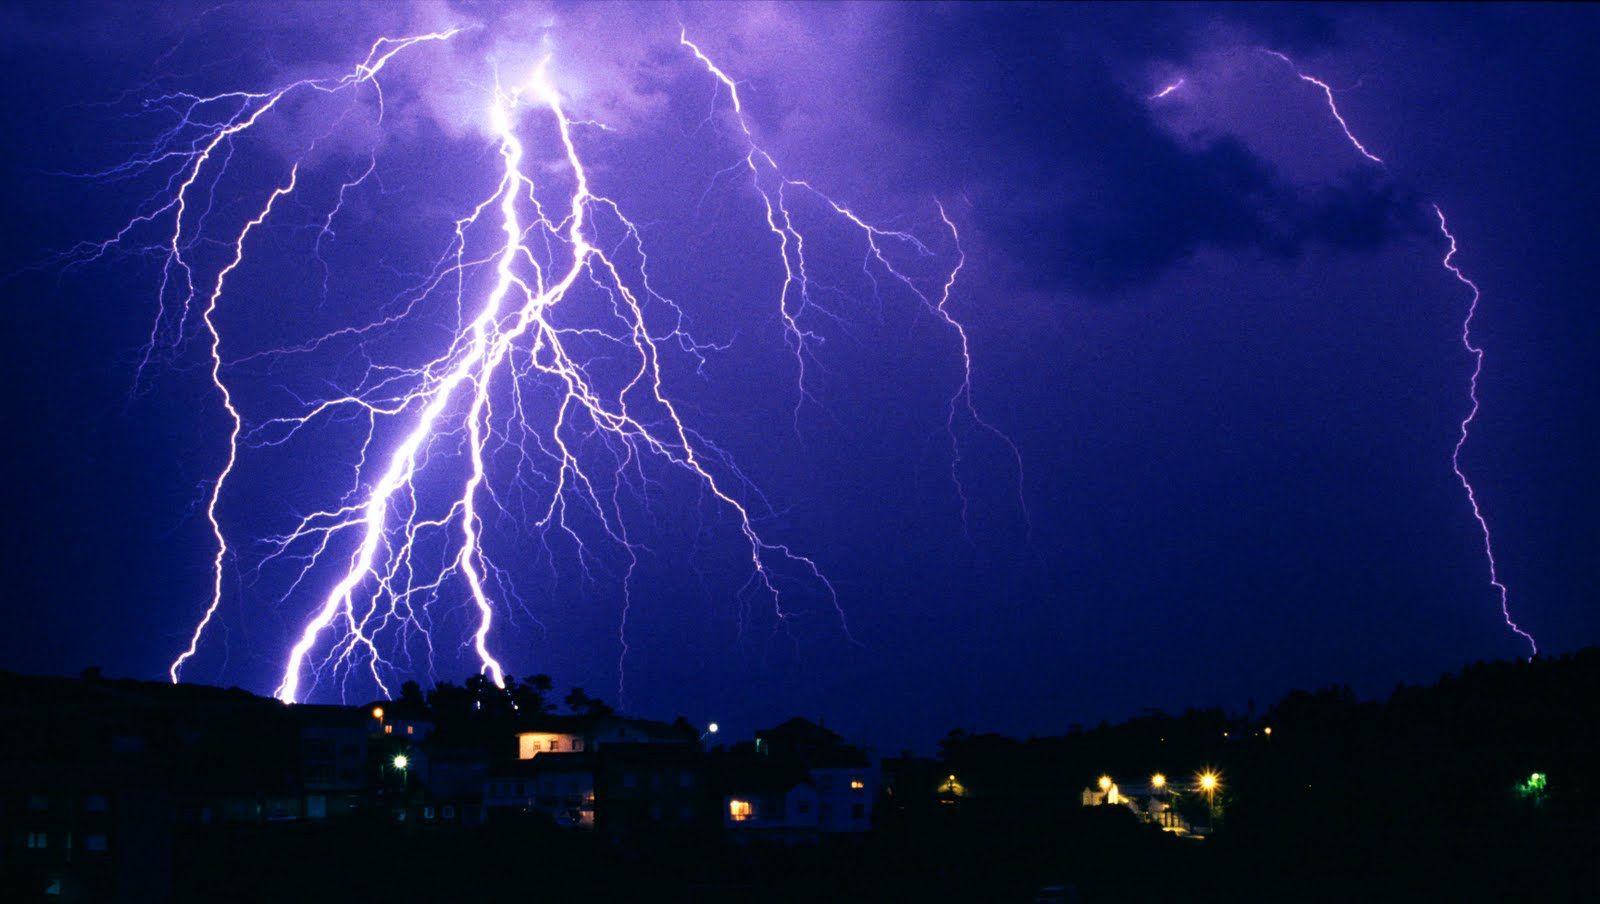 Qué es lo que más atrae a los rayos en una tormenta eléctrica